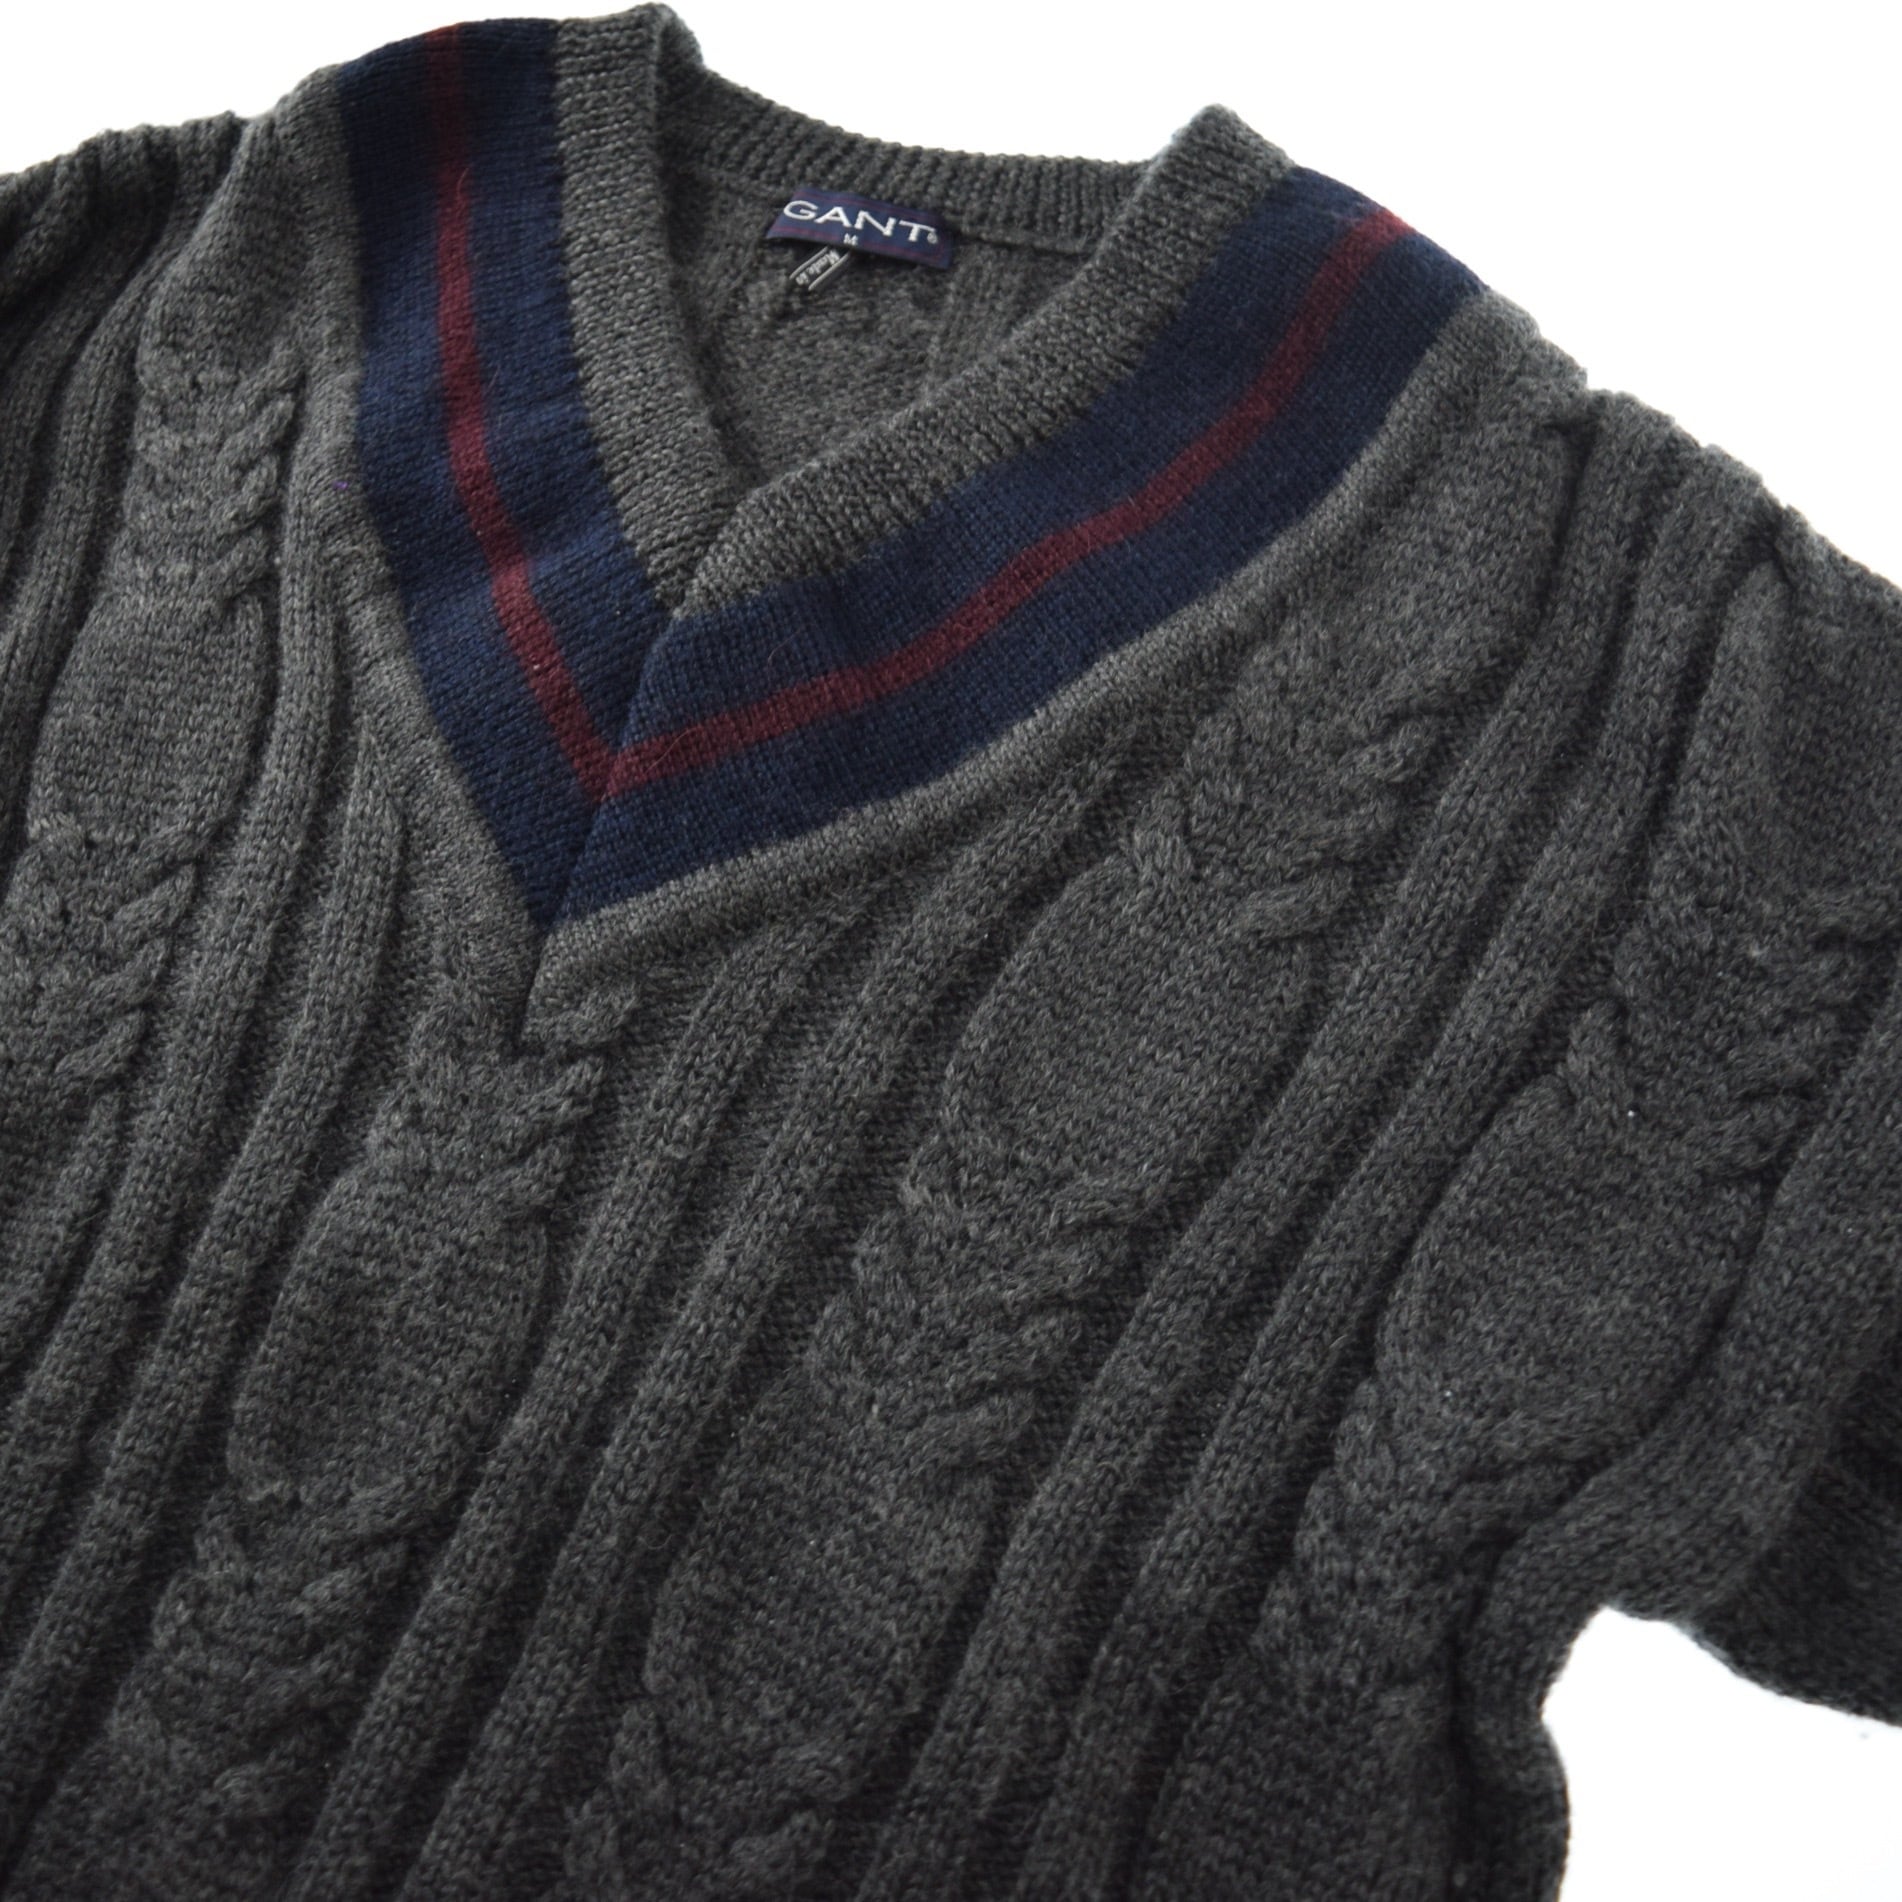 1990's GANT Vintage Tilden Knit Wool Sweater Made In ITALY 90s 90年代  チルデンセーター イタリア製 Vネックセーター marron vintage